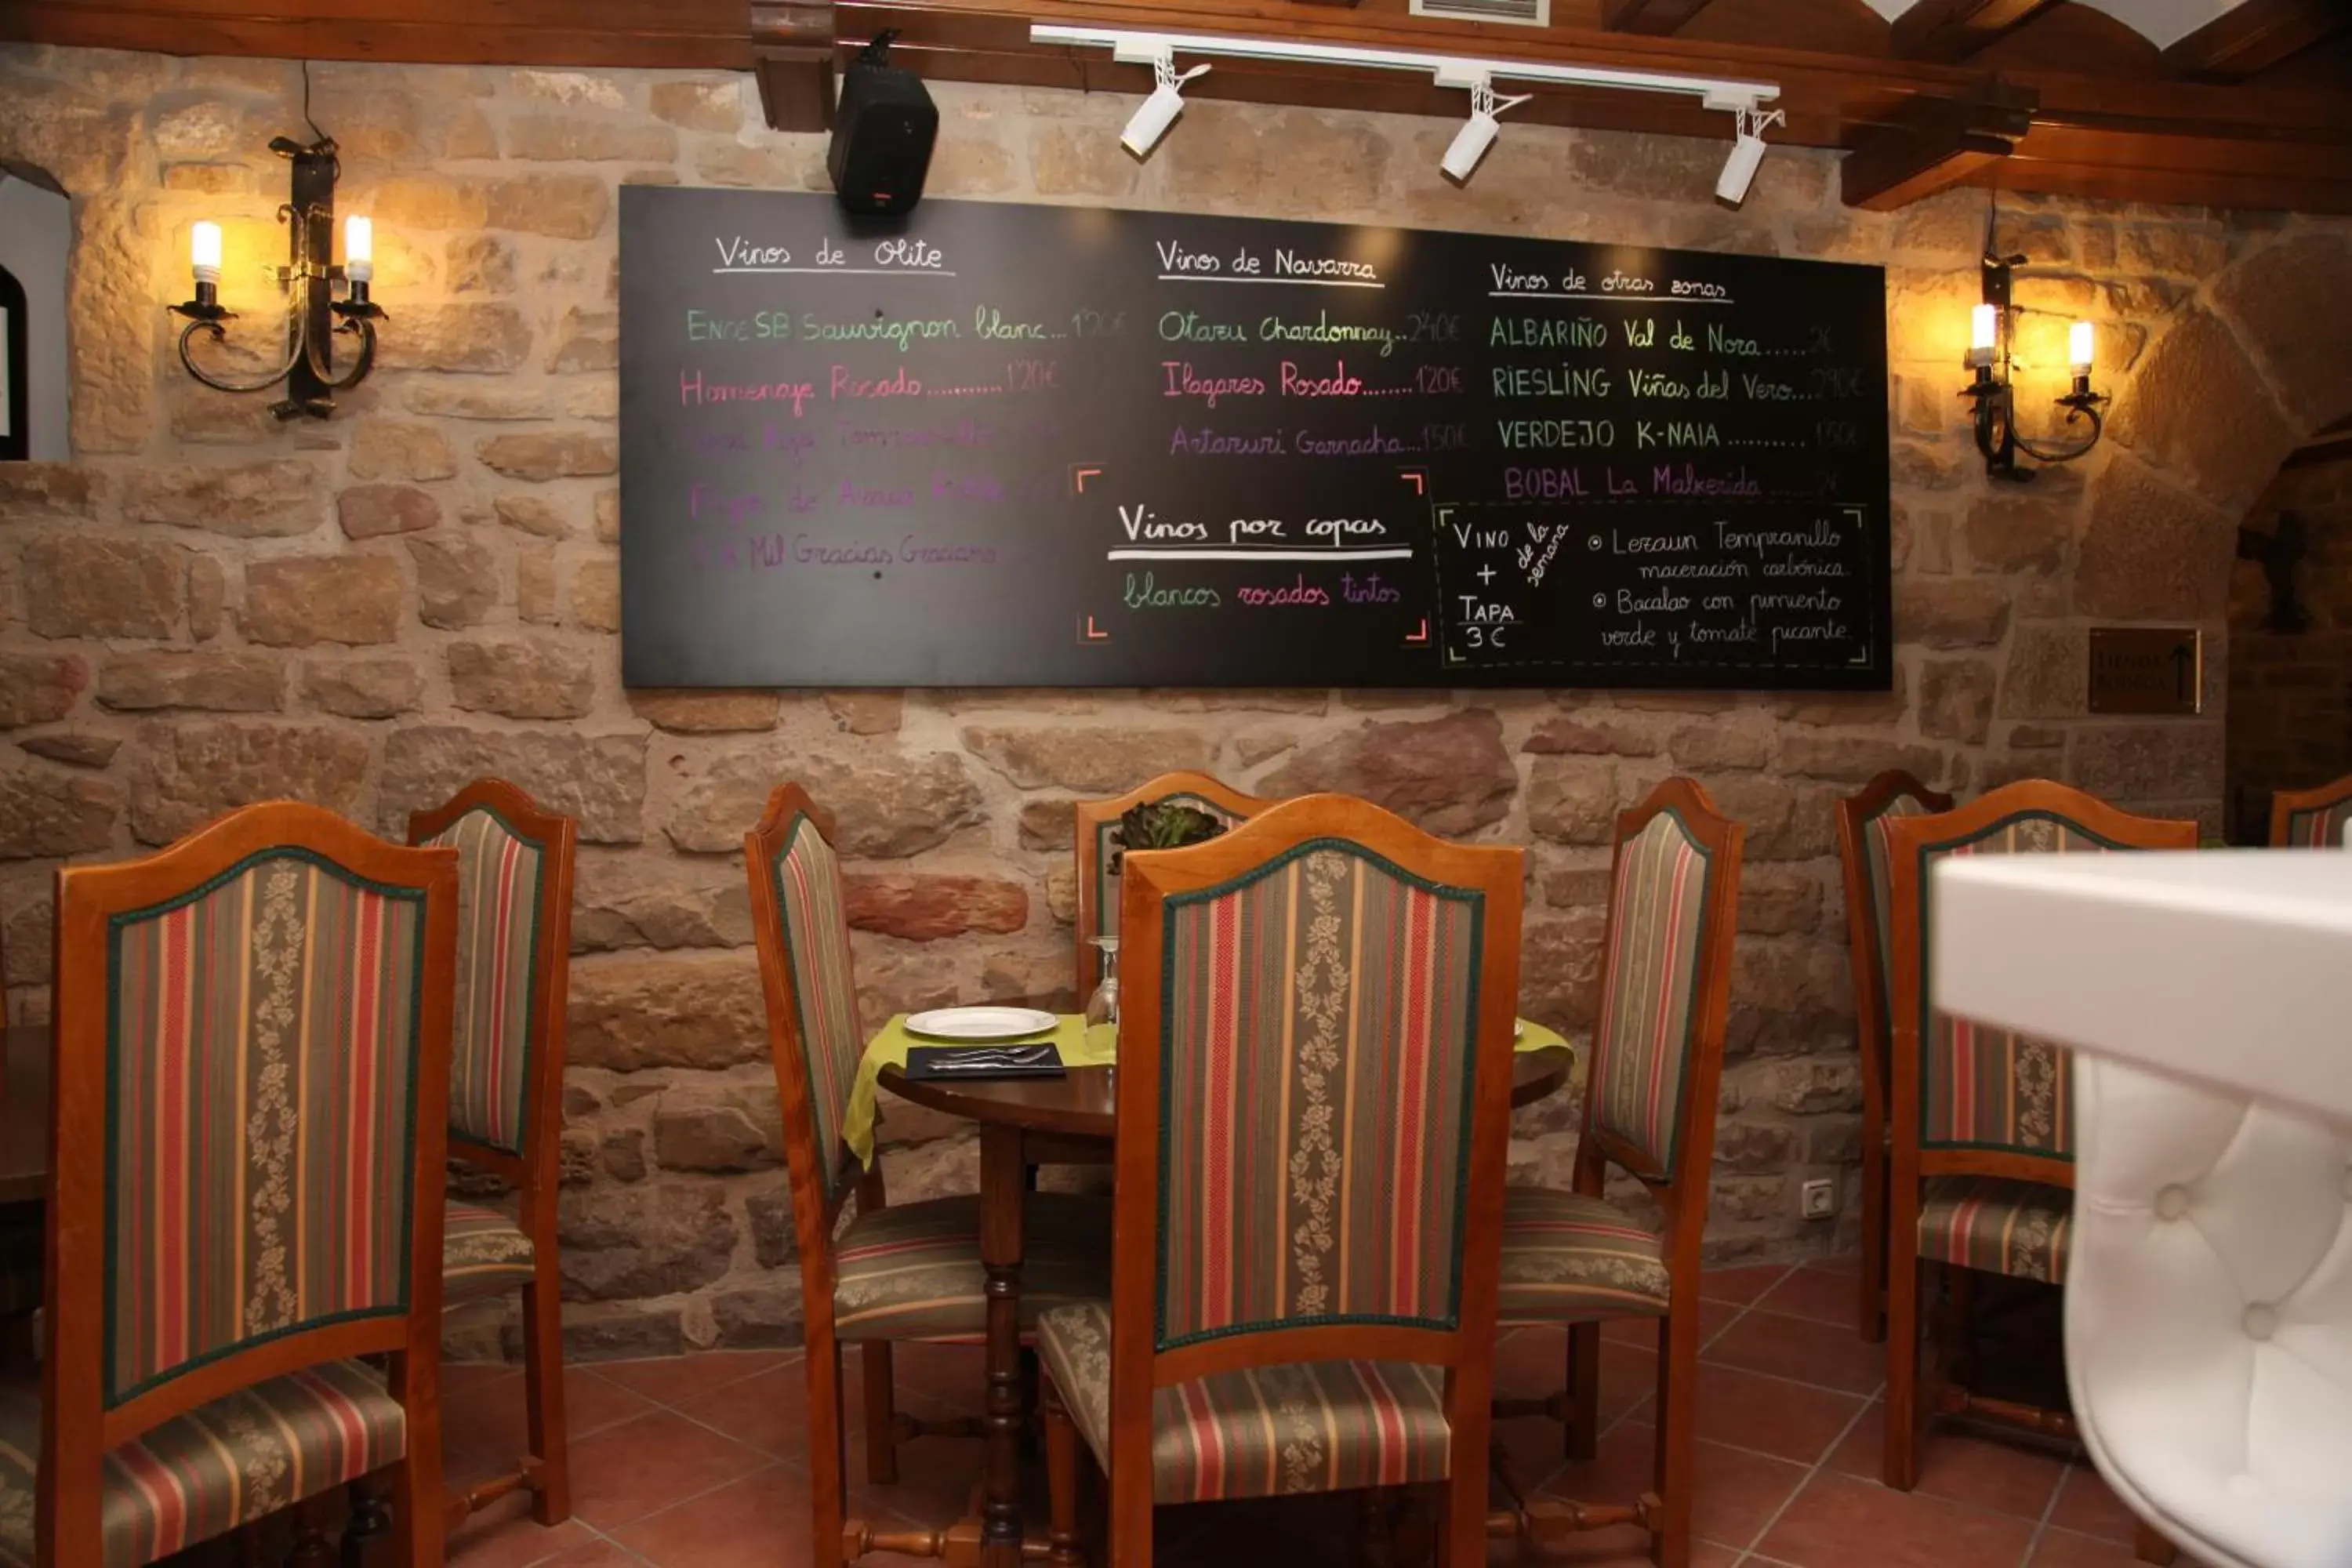 Dining area, Restaurant/Places to Eat in Hotel Merindad de Olite